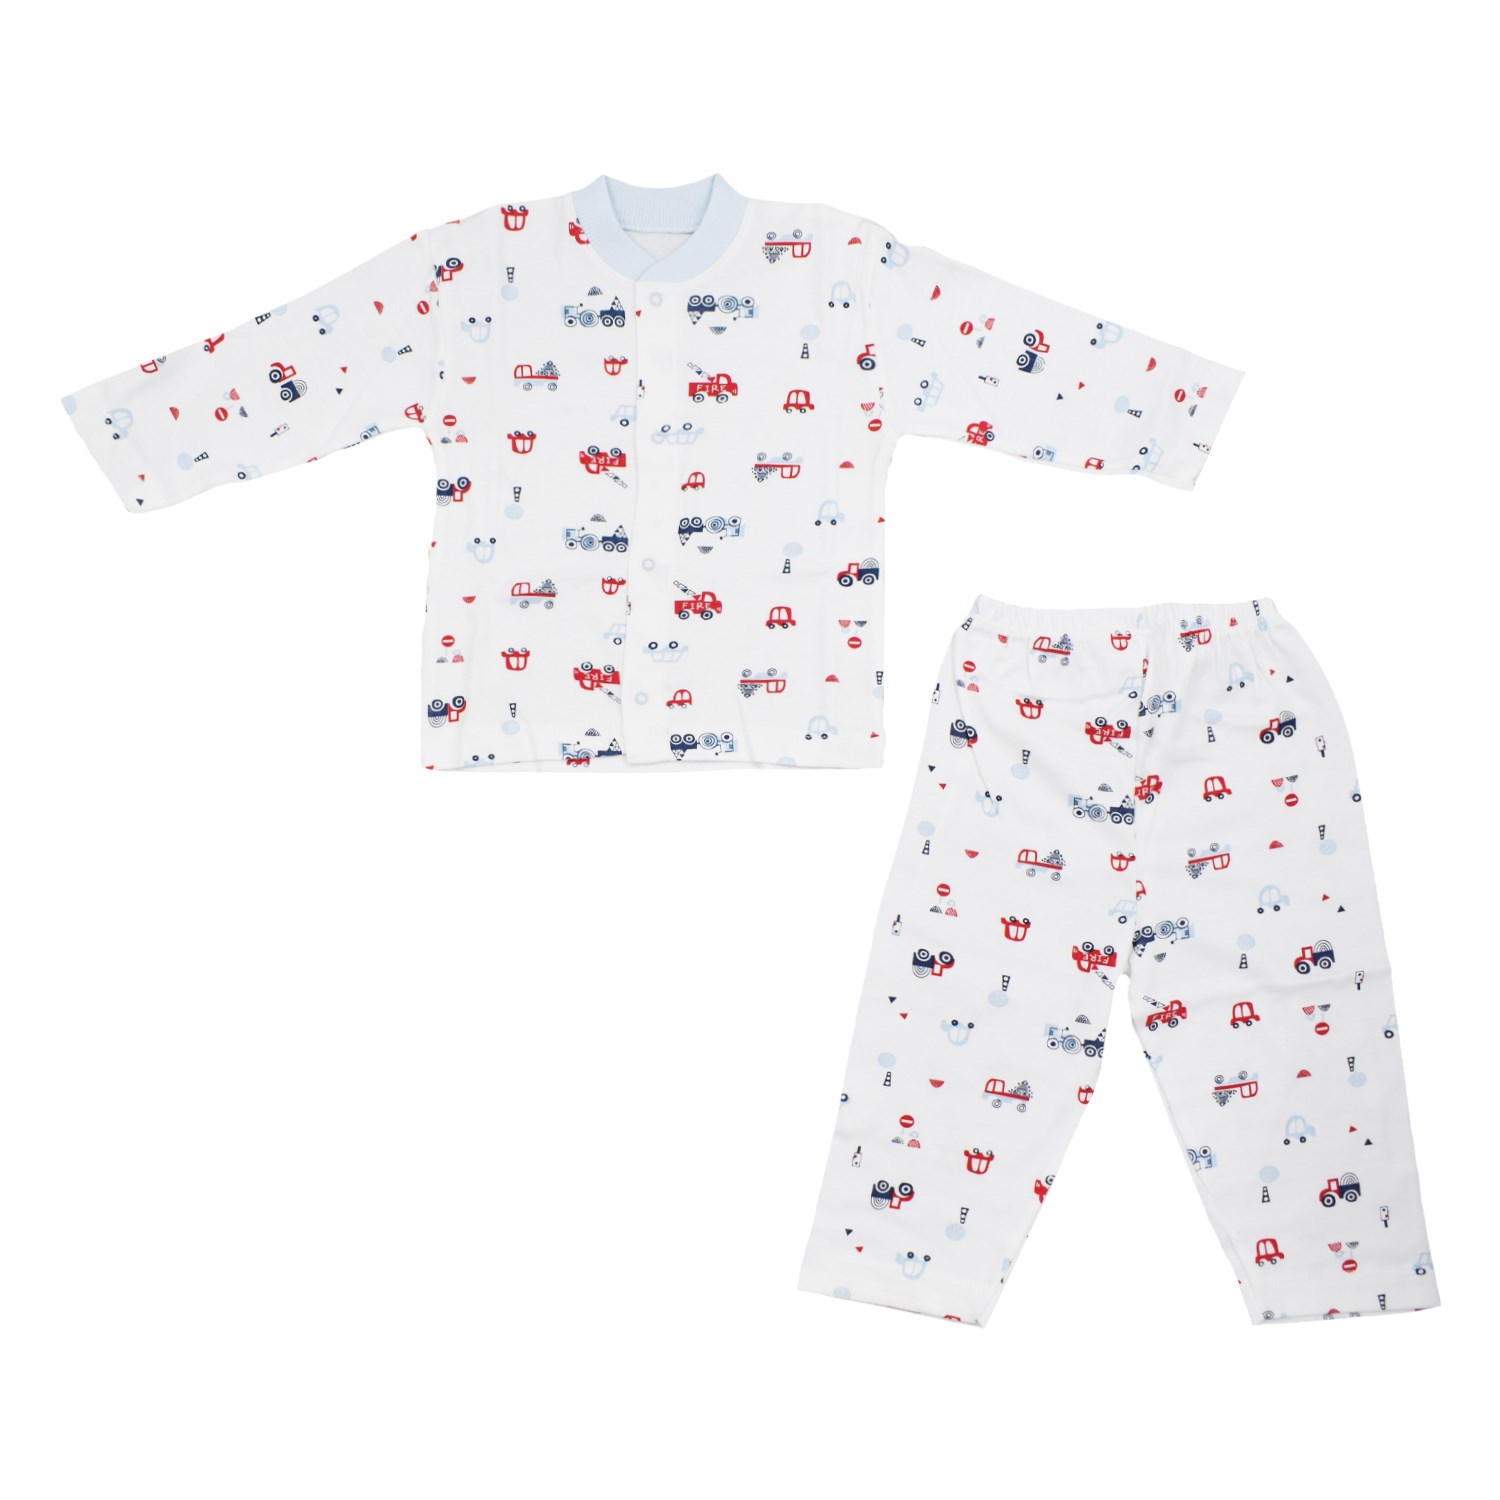 Sebi Bebe Bebek Pijama Takımı 2302 Beyaz-Mavi